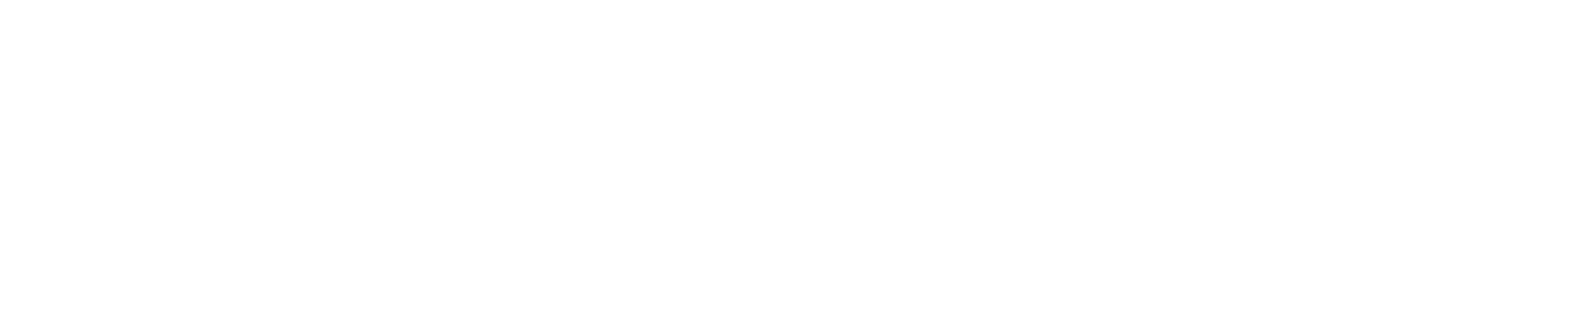 UniFirst logo large for dark backgrounds (transparent PNG)